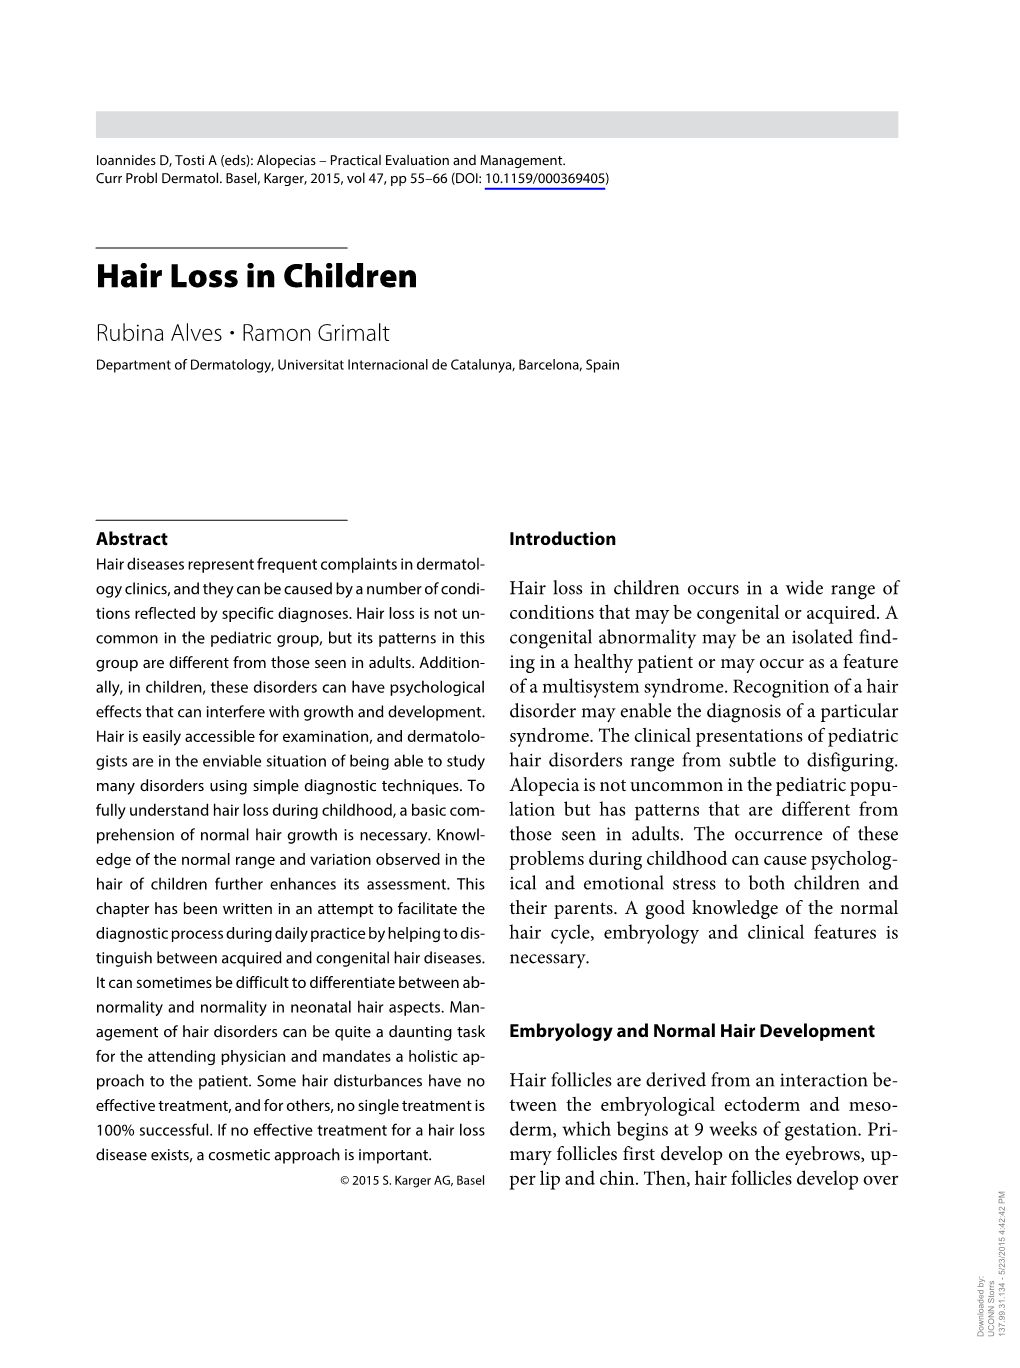 Hair Loss in Children